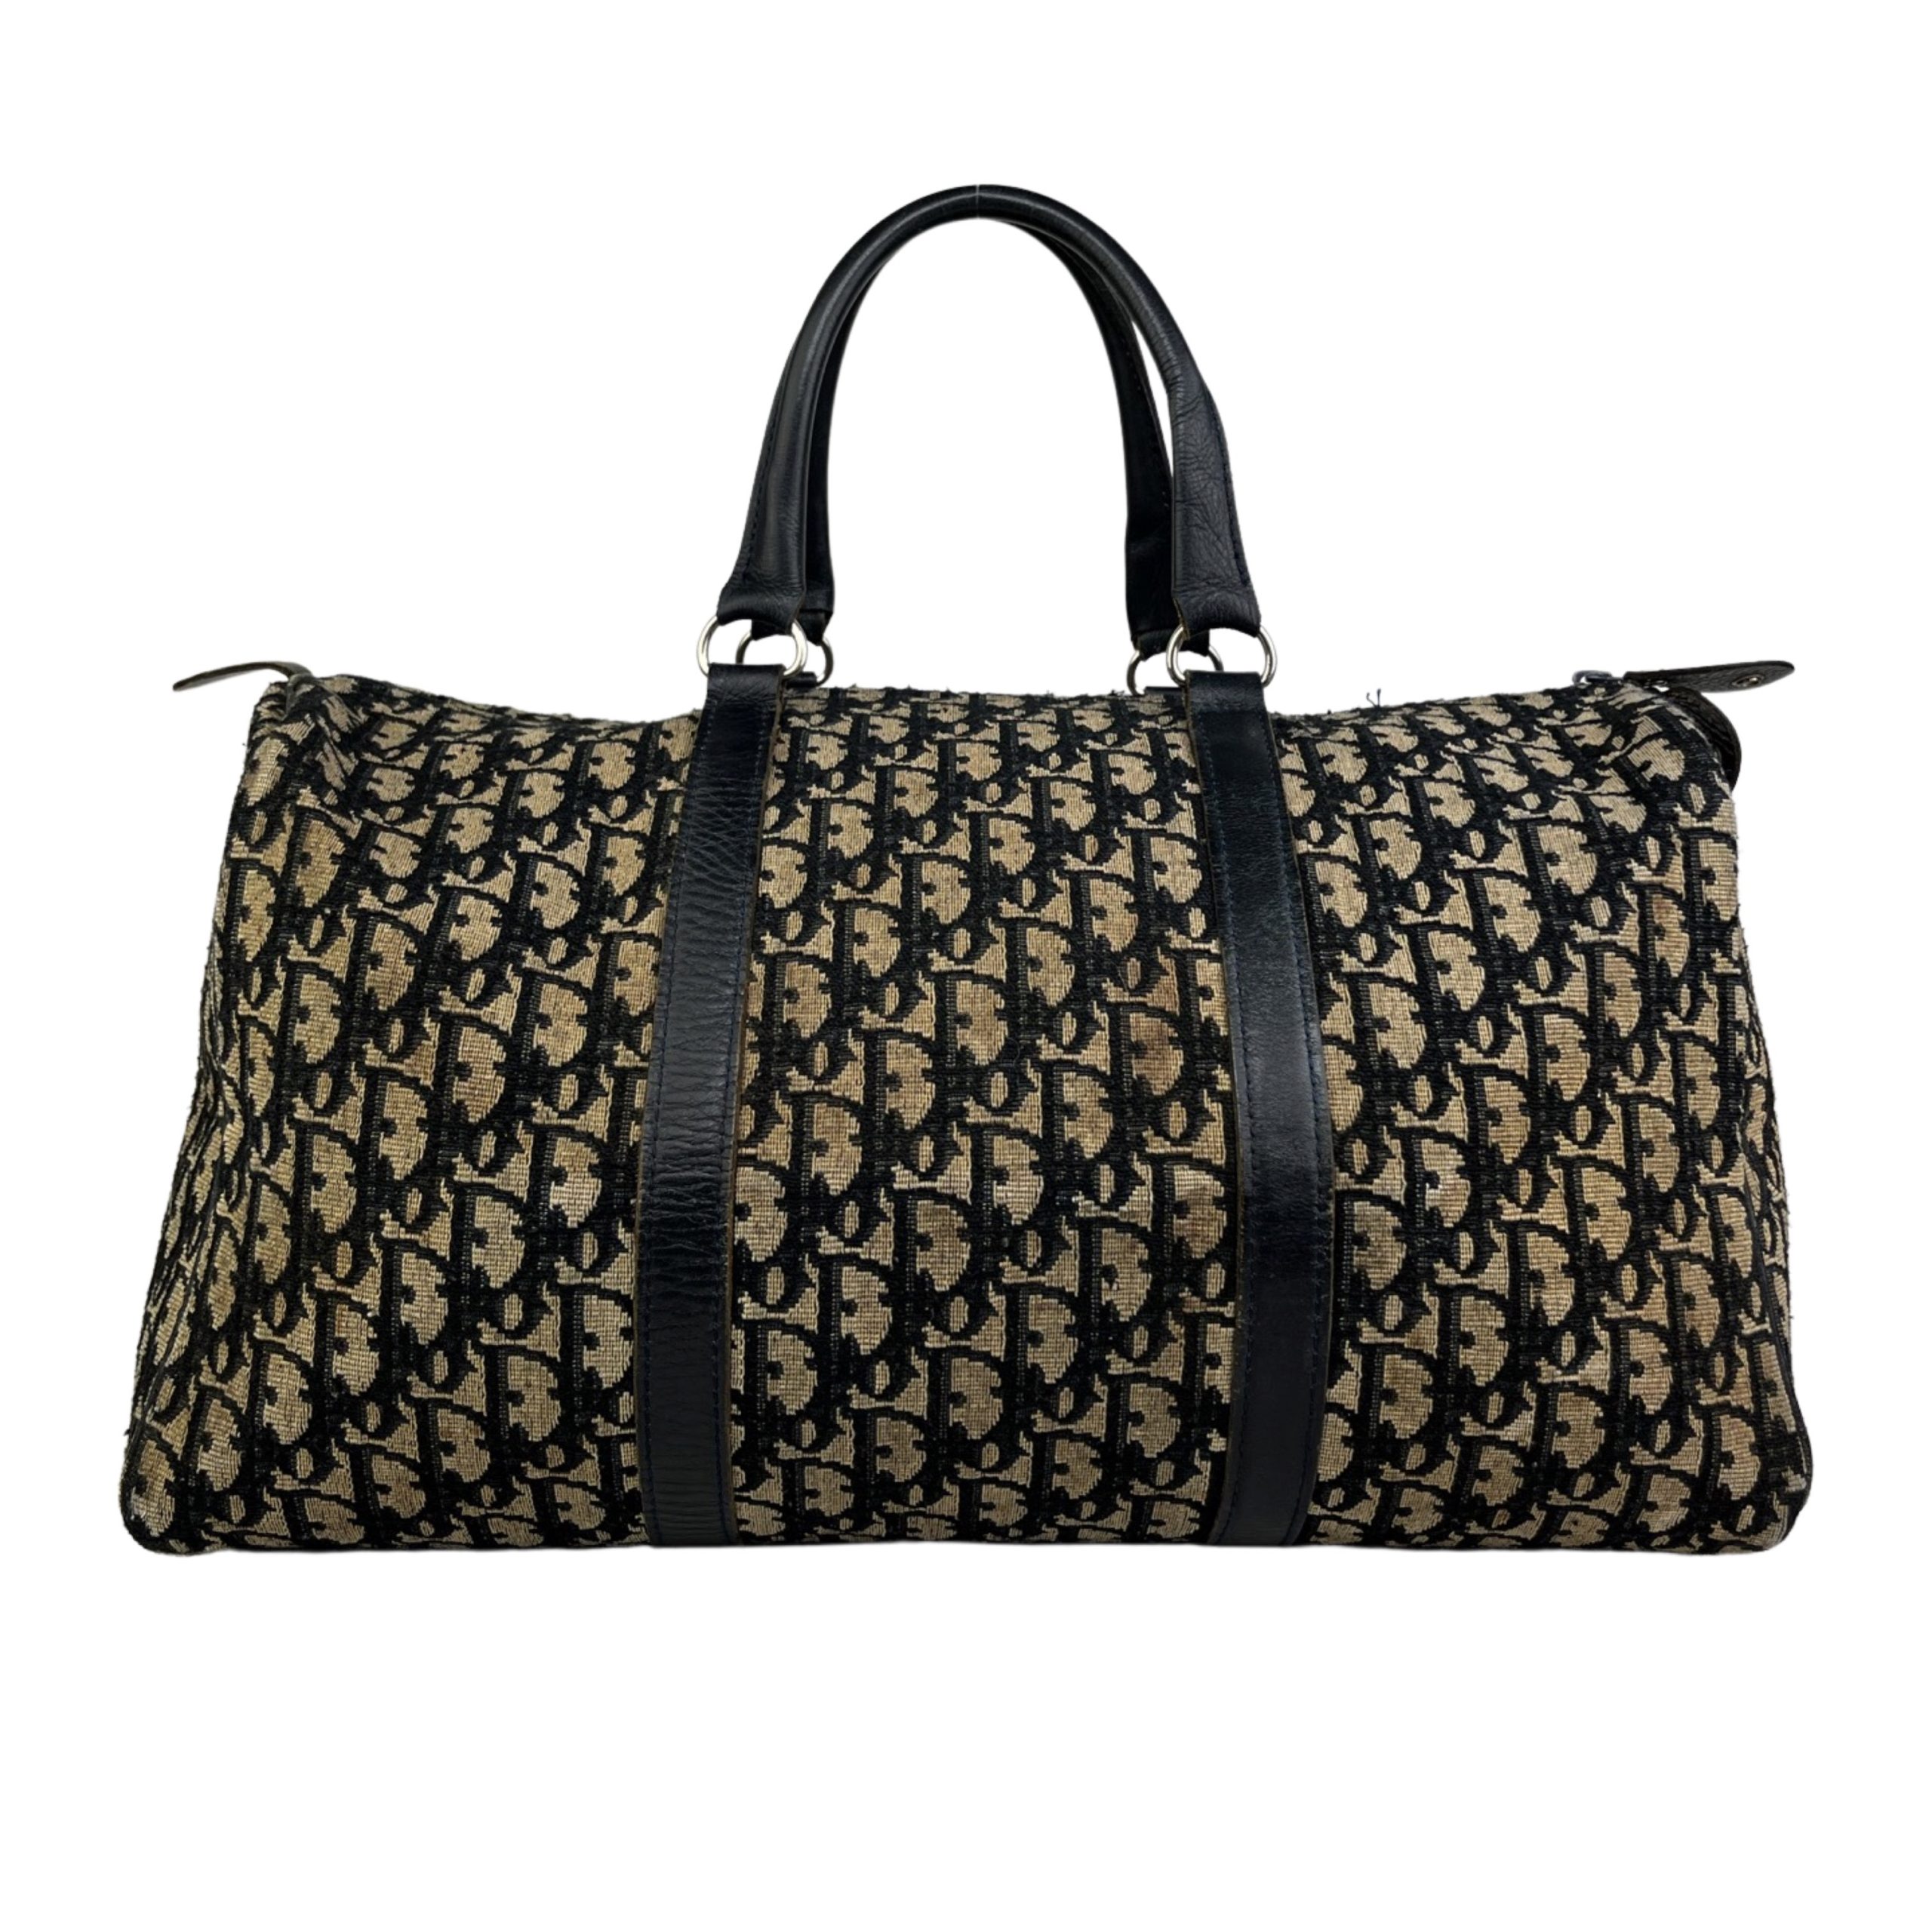 Trotter Mini Boston Bag, Used & Preloved Dior Handbag